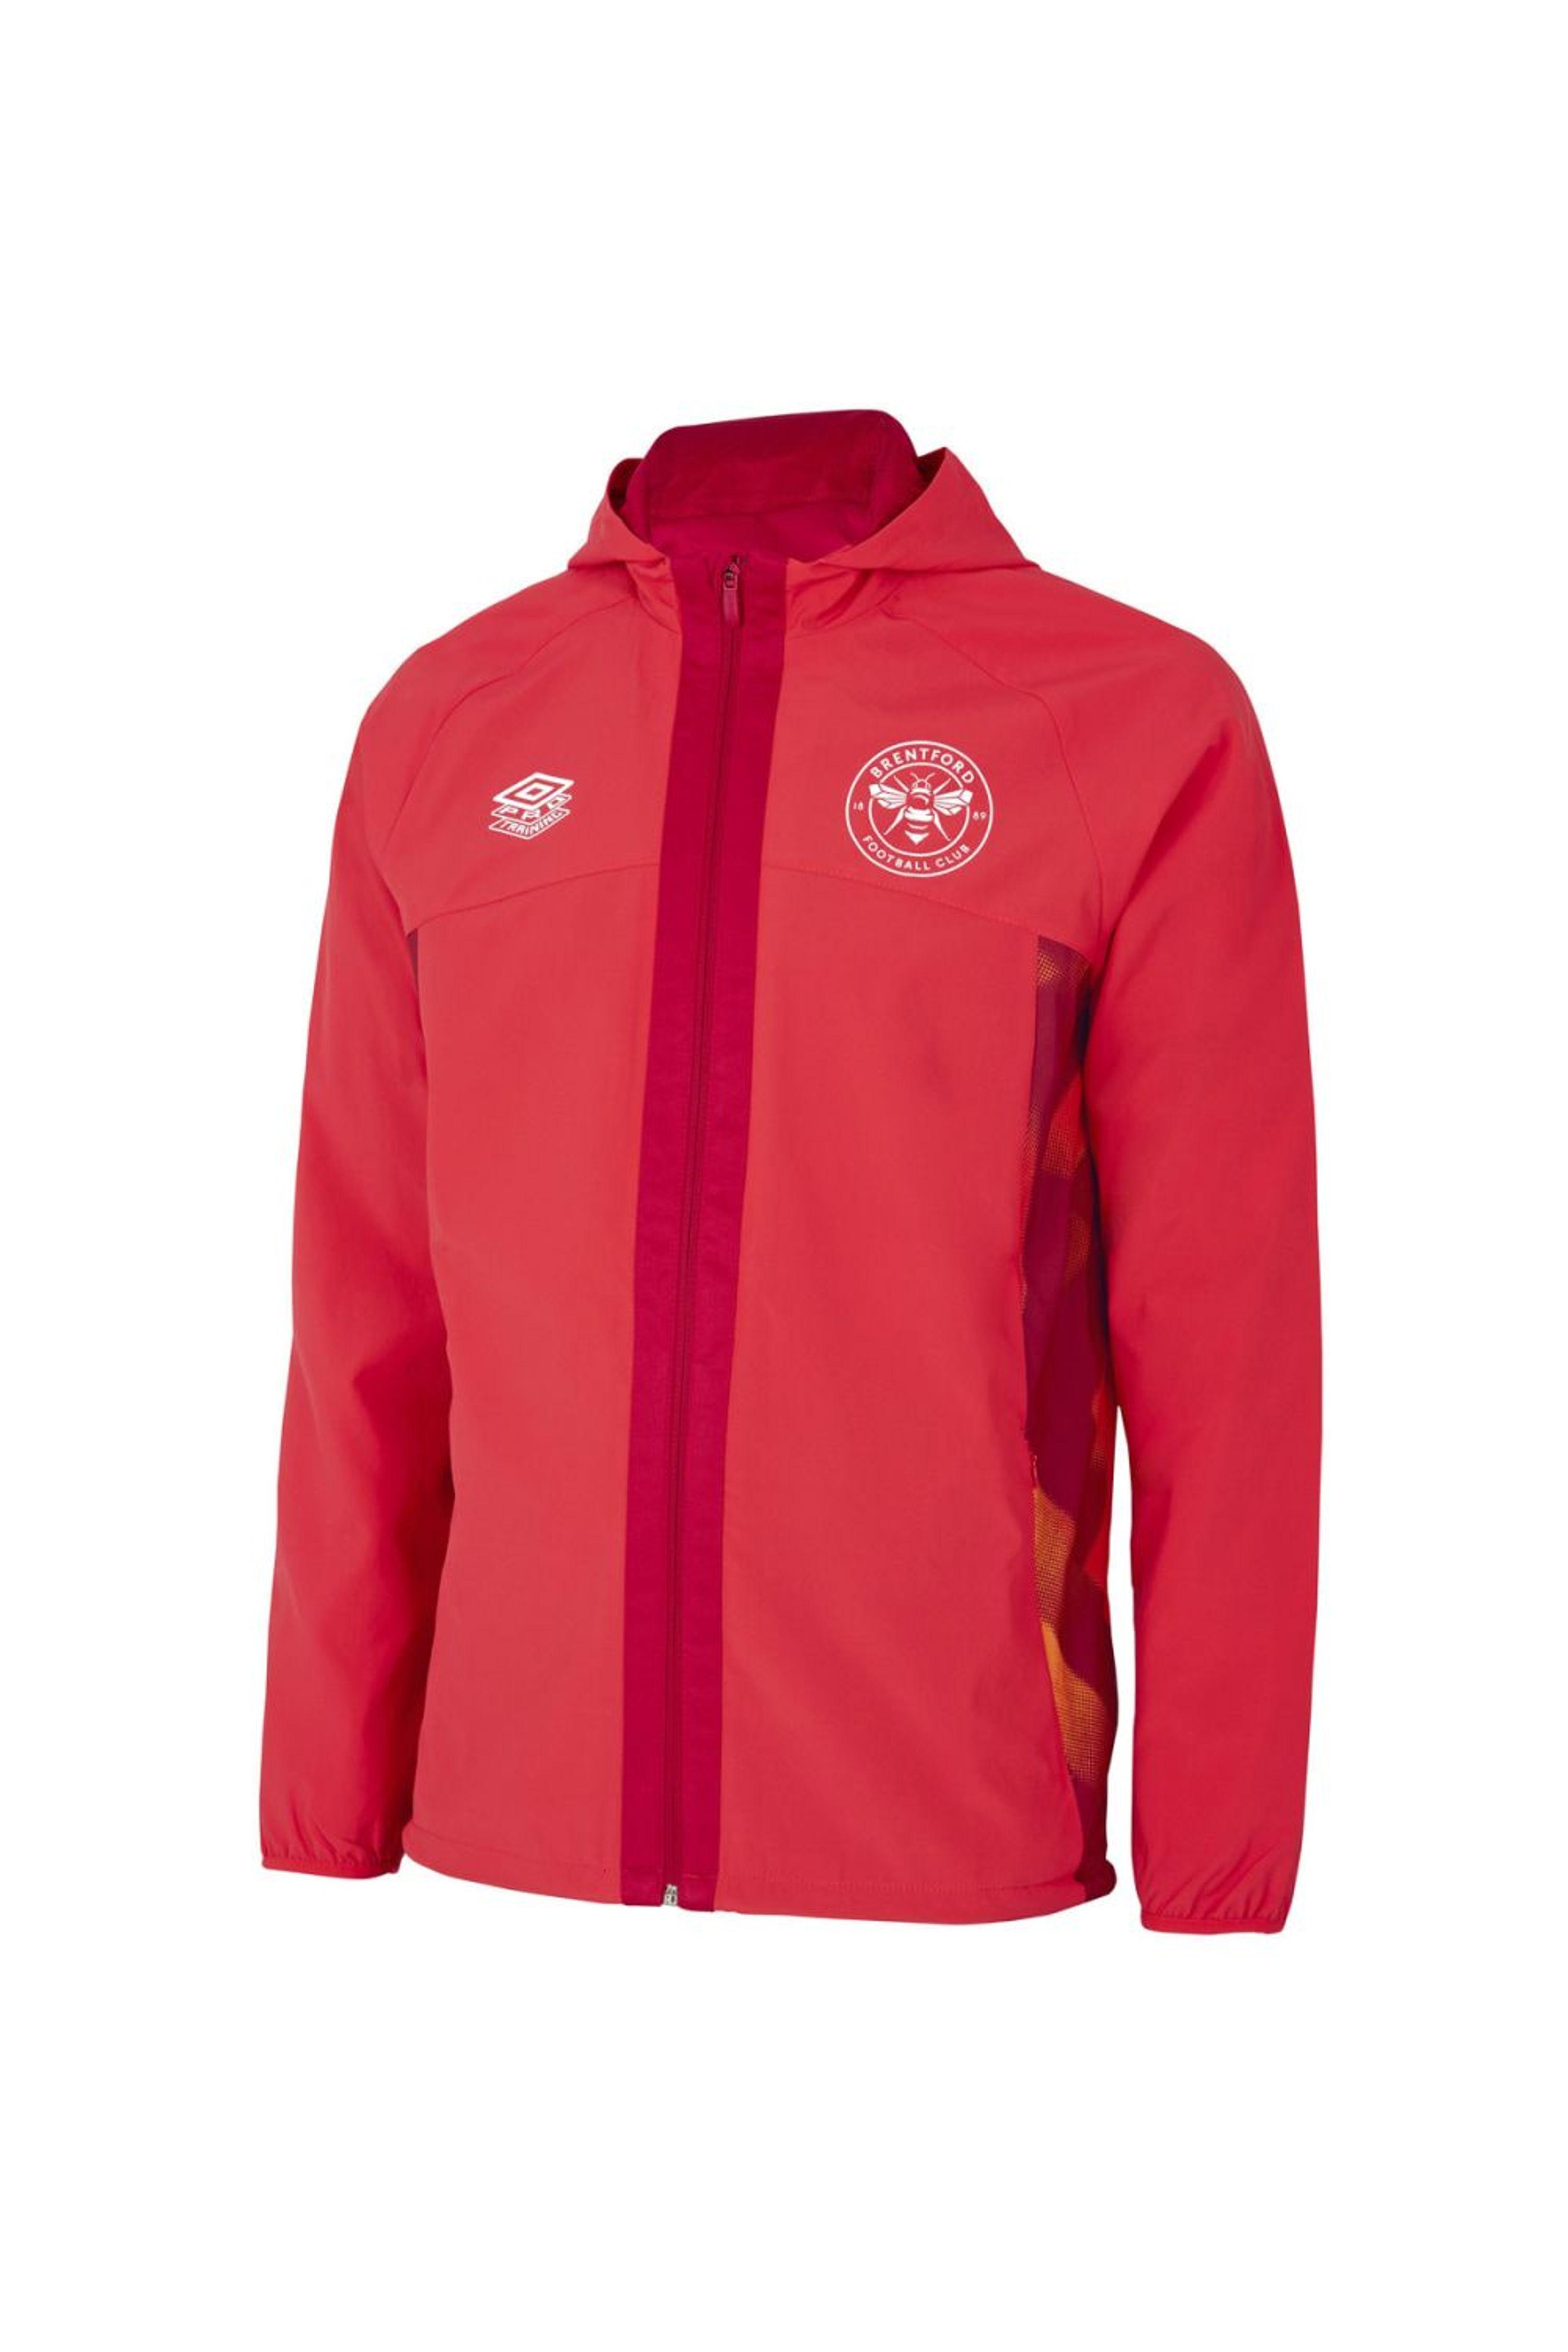 Umbro Brentford Fc 22/23 Waterproof Jacket in Red for Men | Lyst